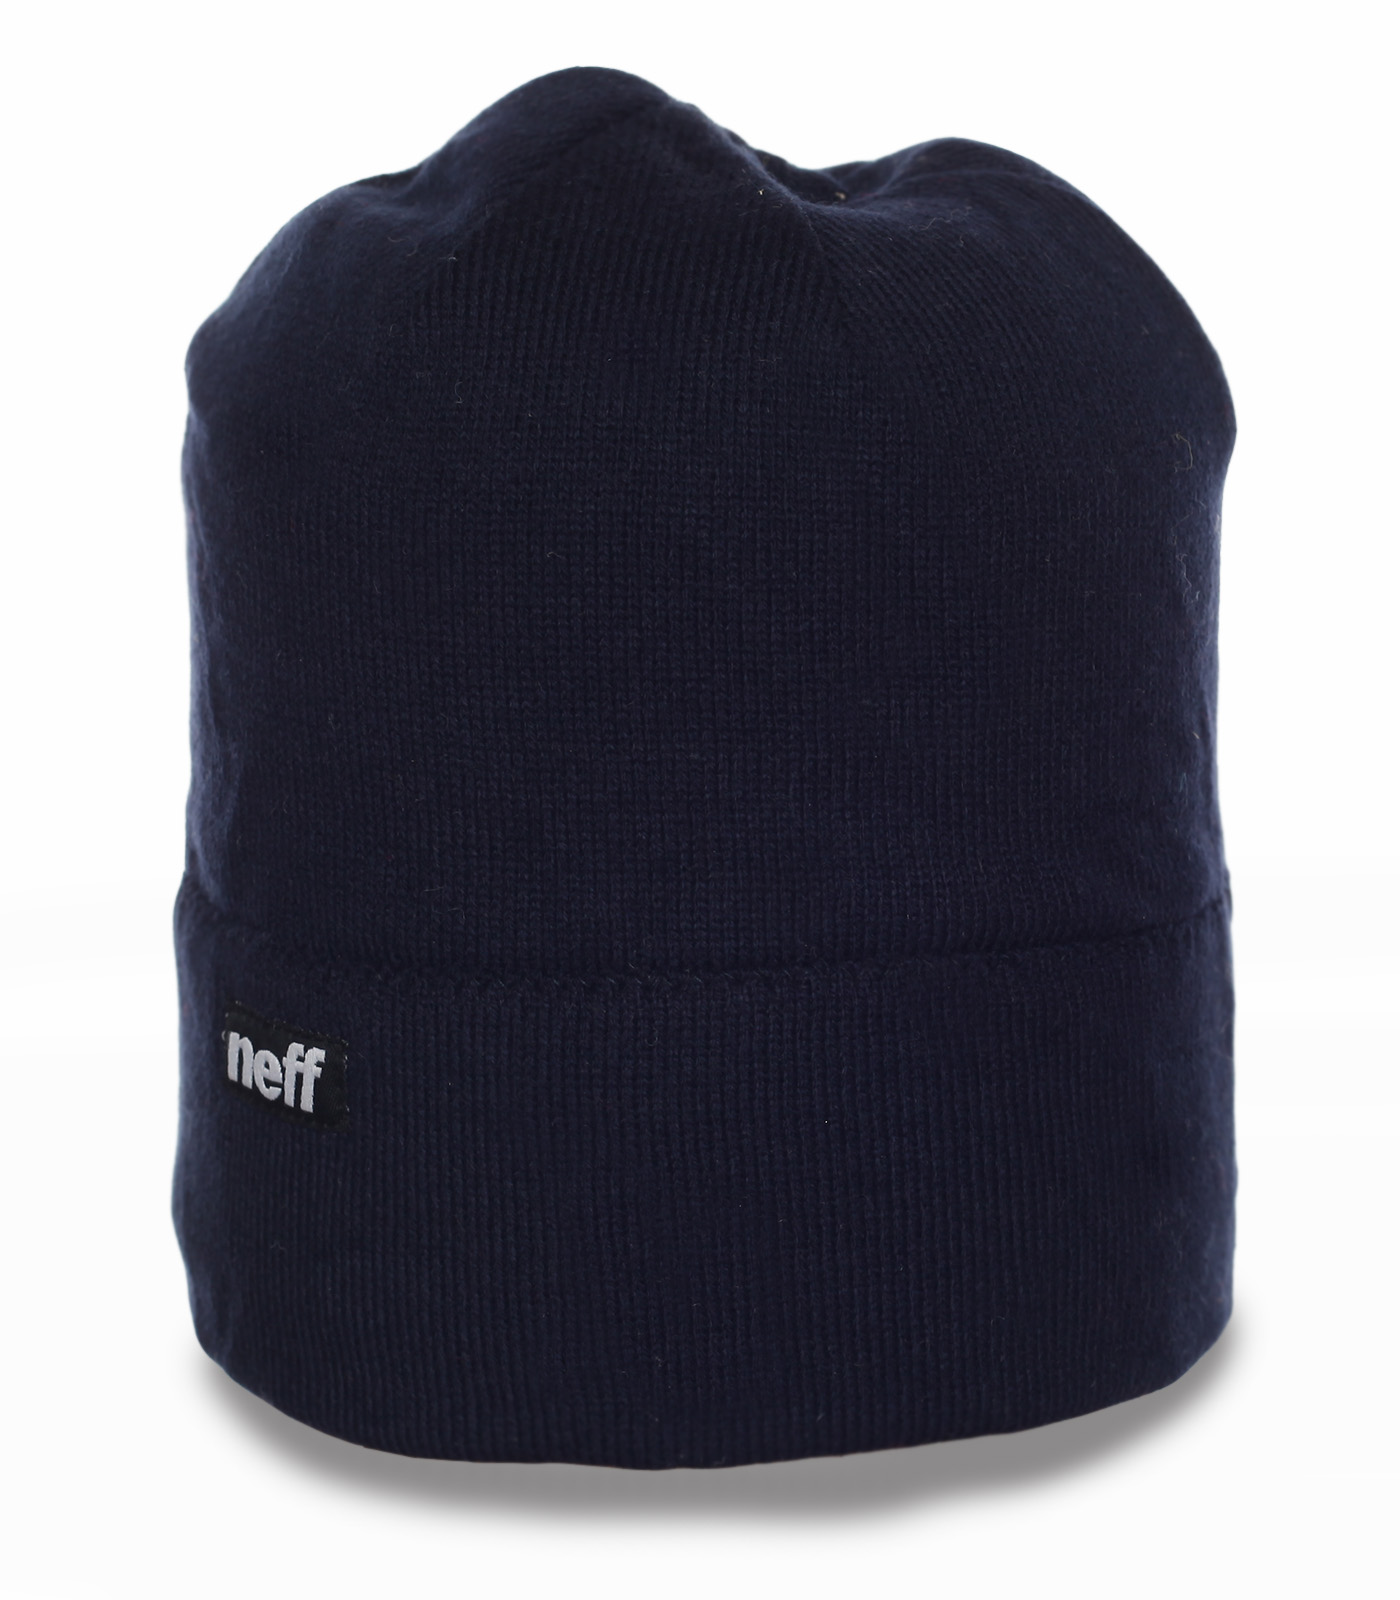 Заказать мужские шапки Neff  недорого с доставкой